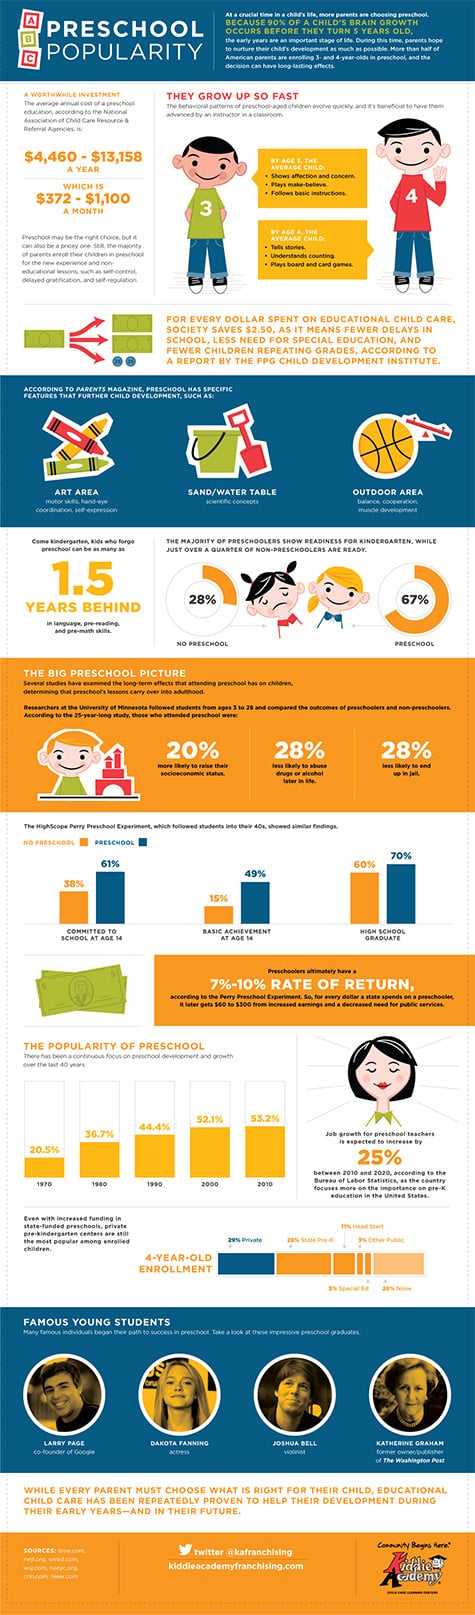 infographic preschool popularity 475